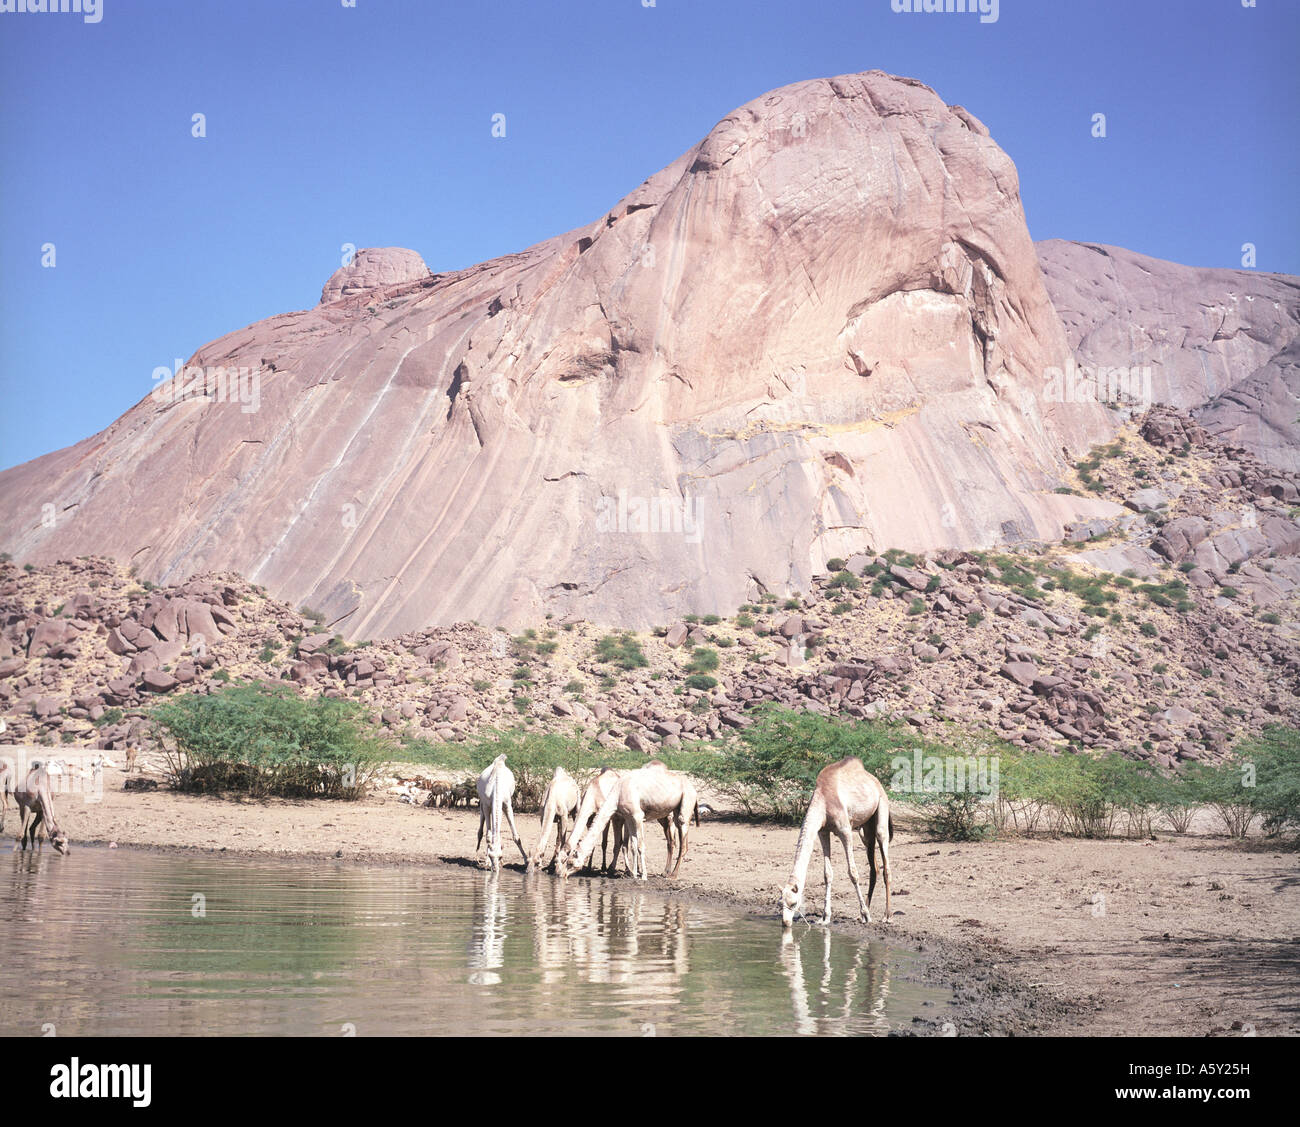 Camel Kassala mountain, Eastern Sudan Stock Photo